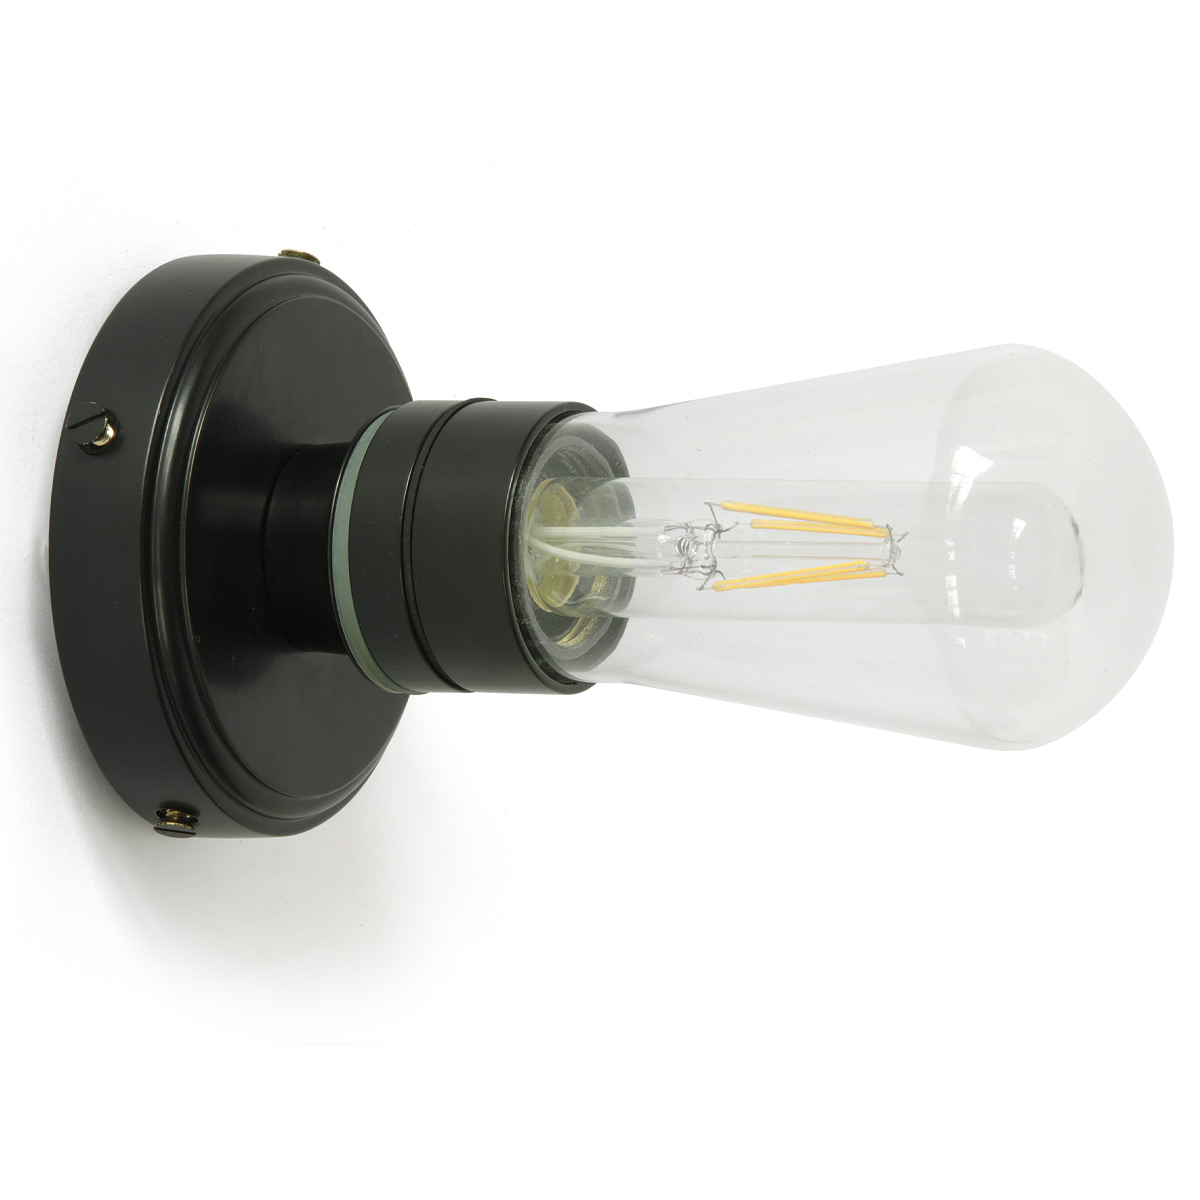 Einfache Badezimmer-Wandlampe mit Glaskolben, IP65: Glaskolben-Wandleuchte für das Bad, hier schwarz pulverlackbeschichtet